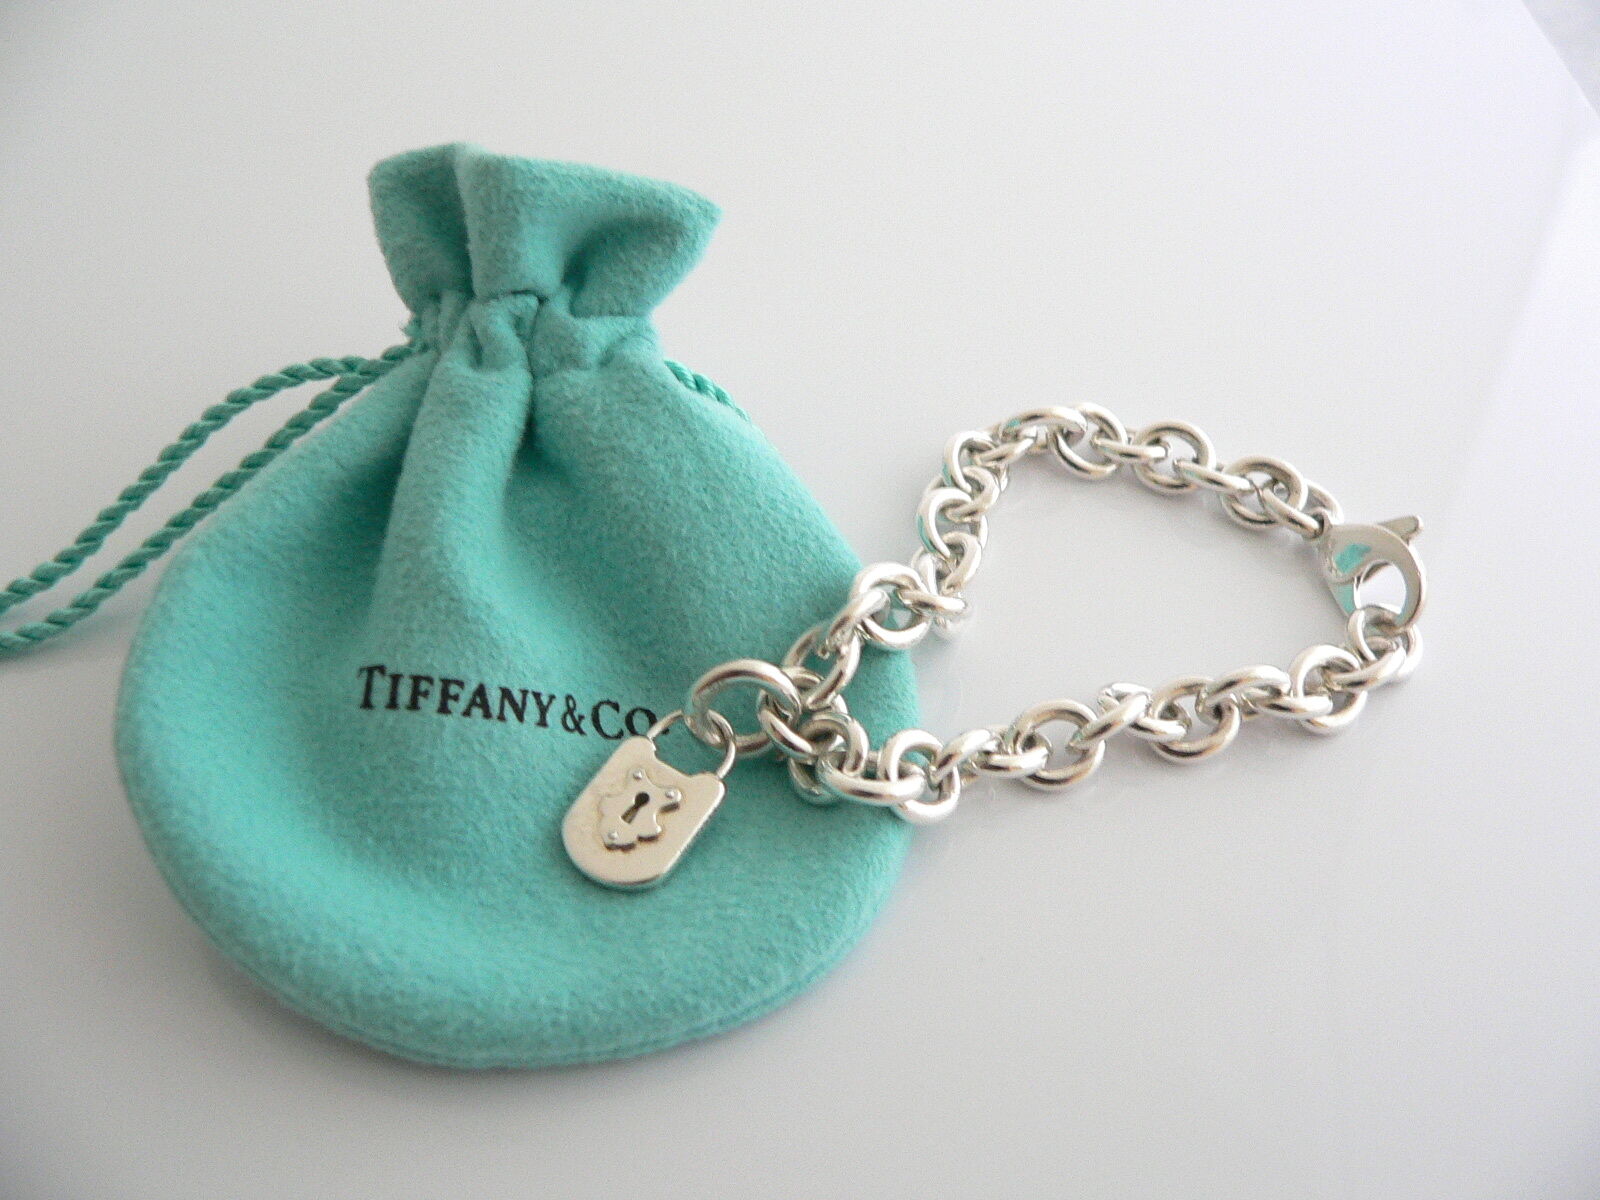 tiffany lock bracelet with key